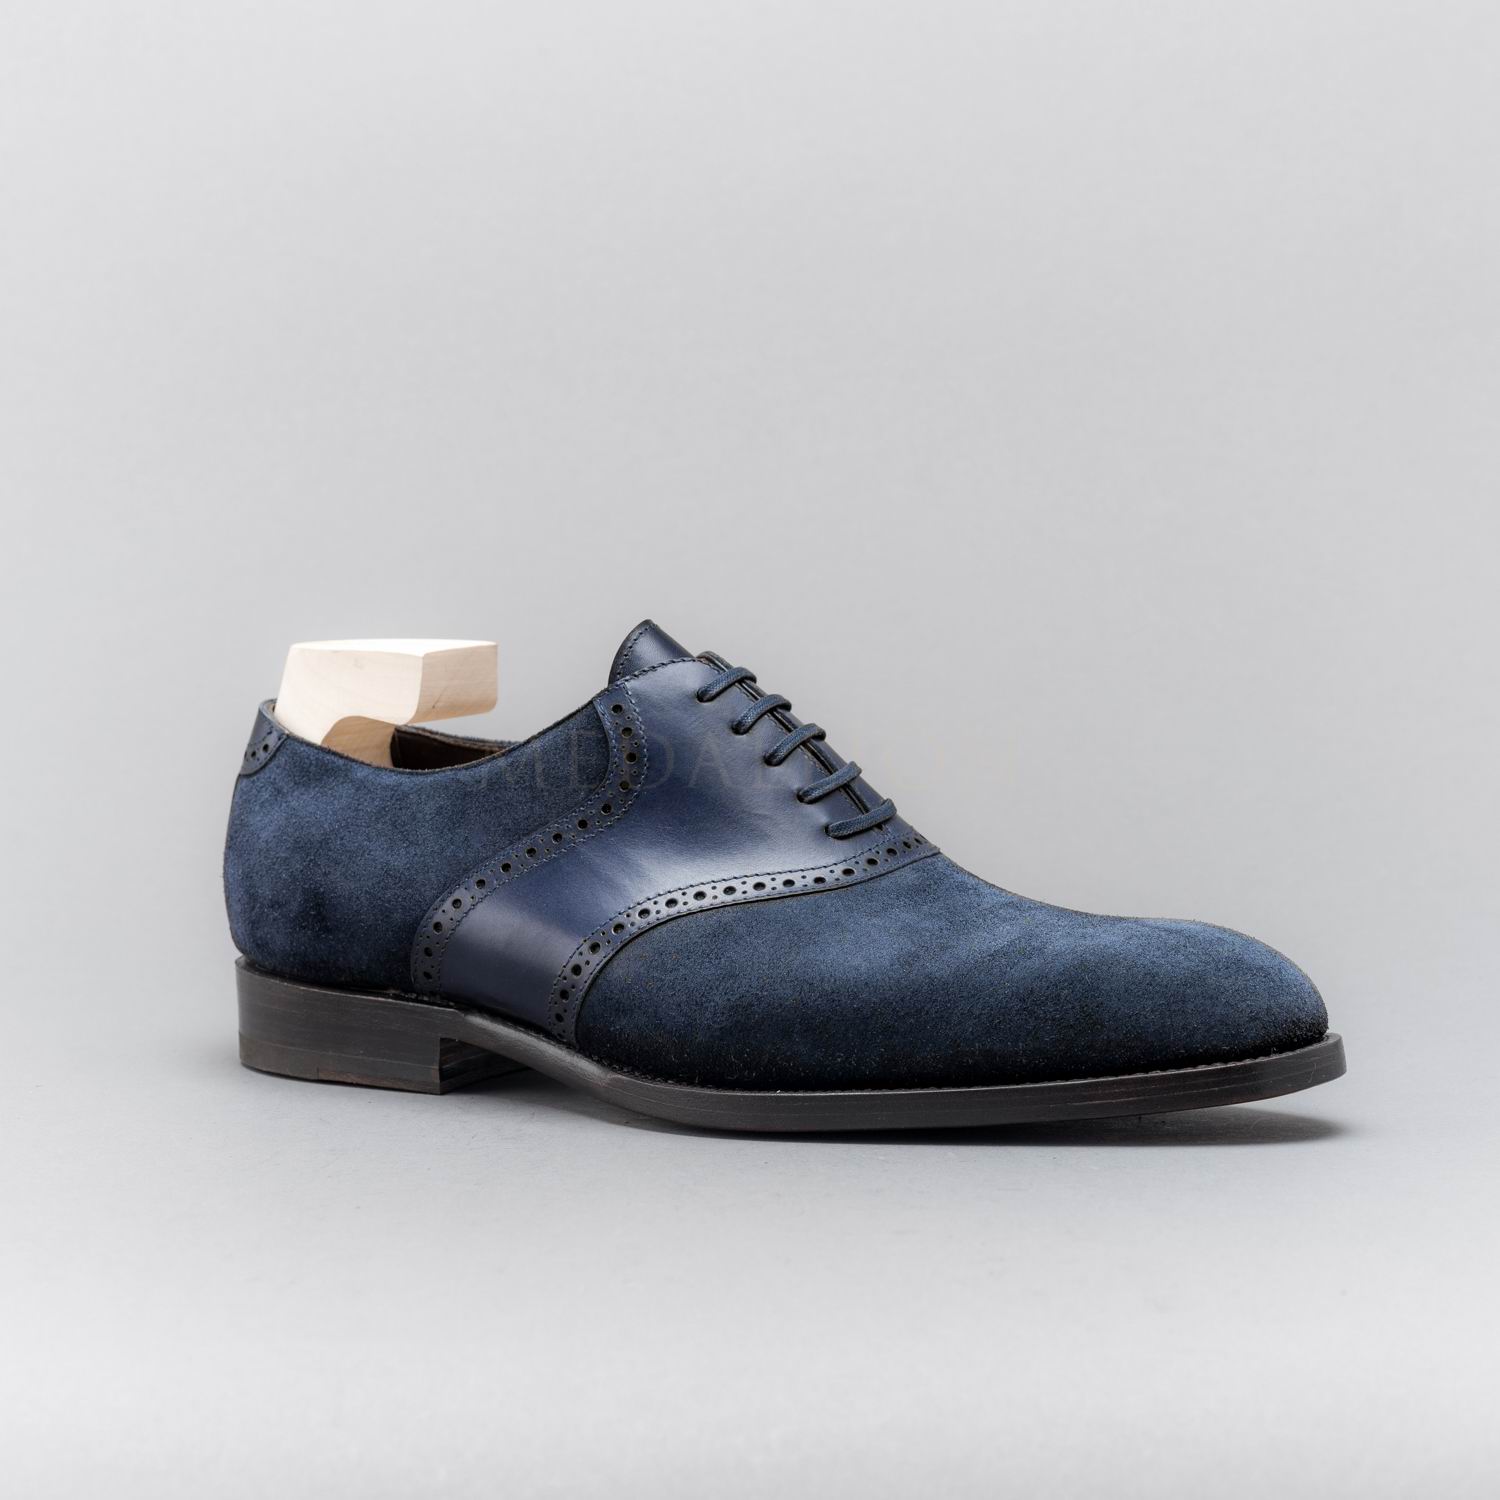 Zonkey Boots, H-width, Saddle shoes, Austria – Medallion Shoes